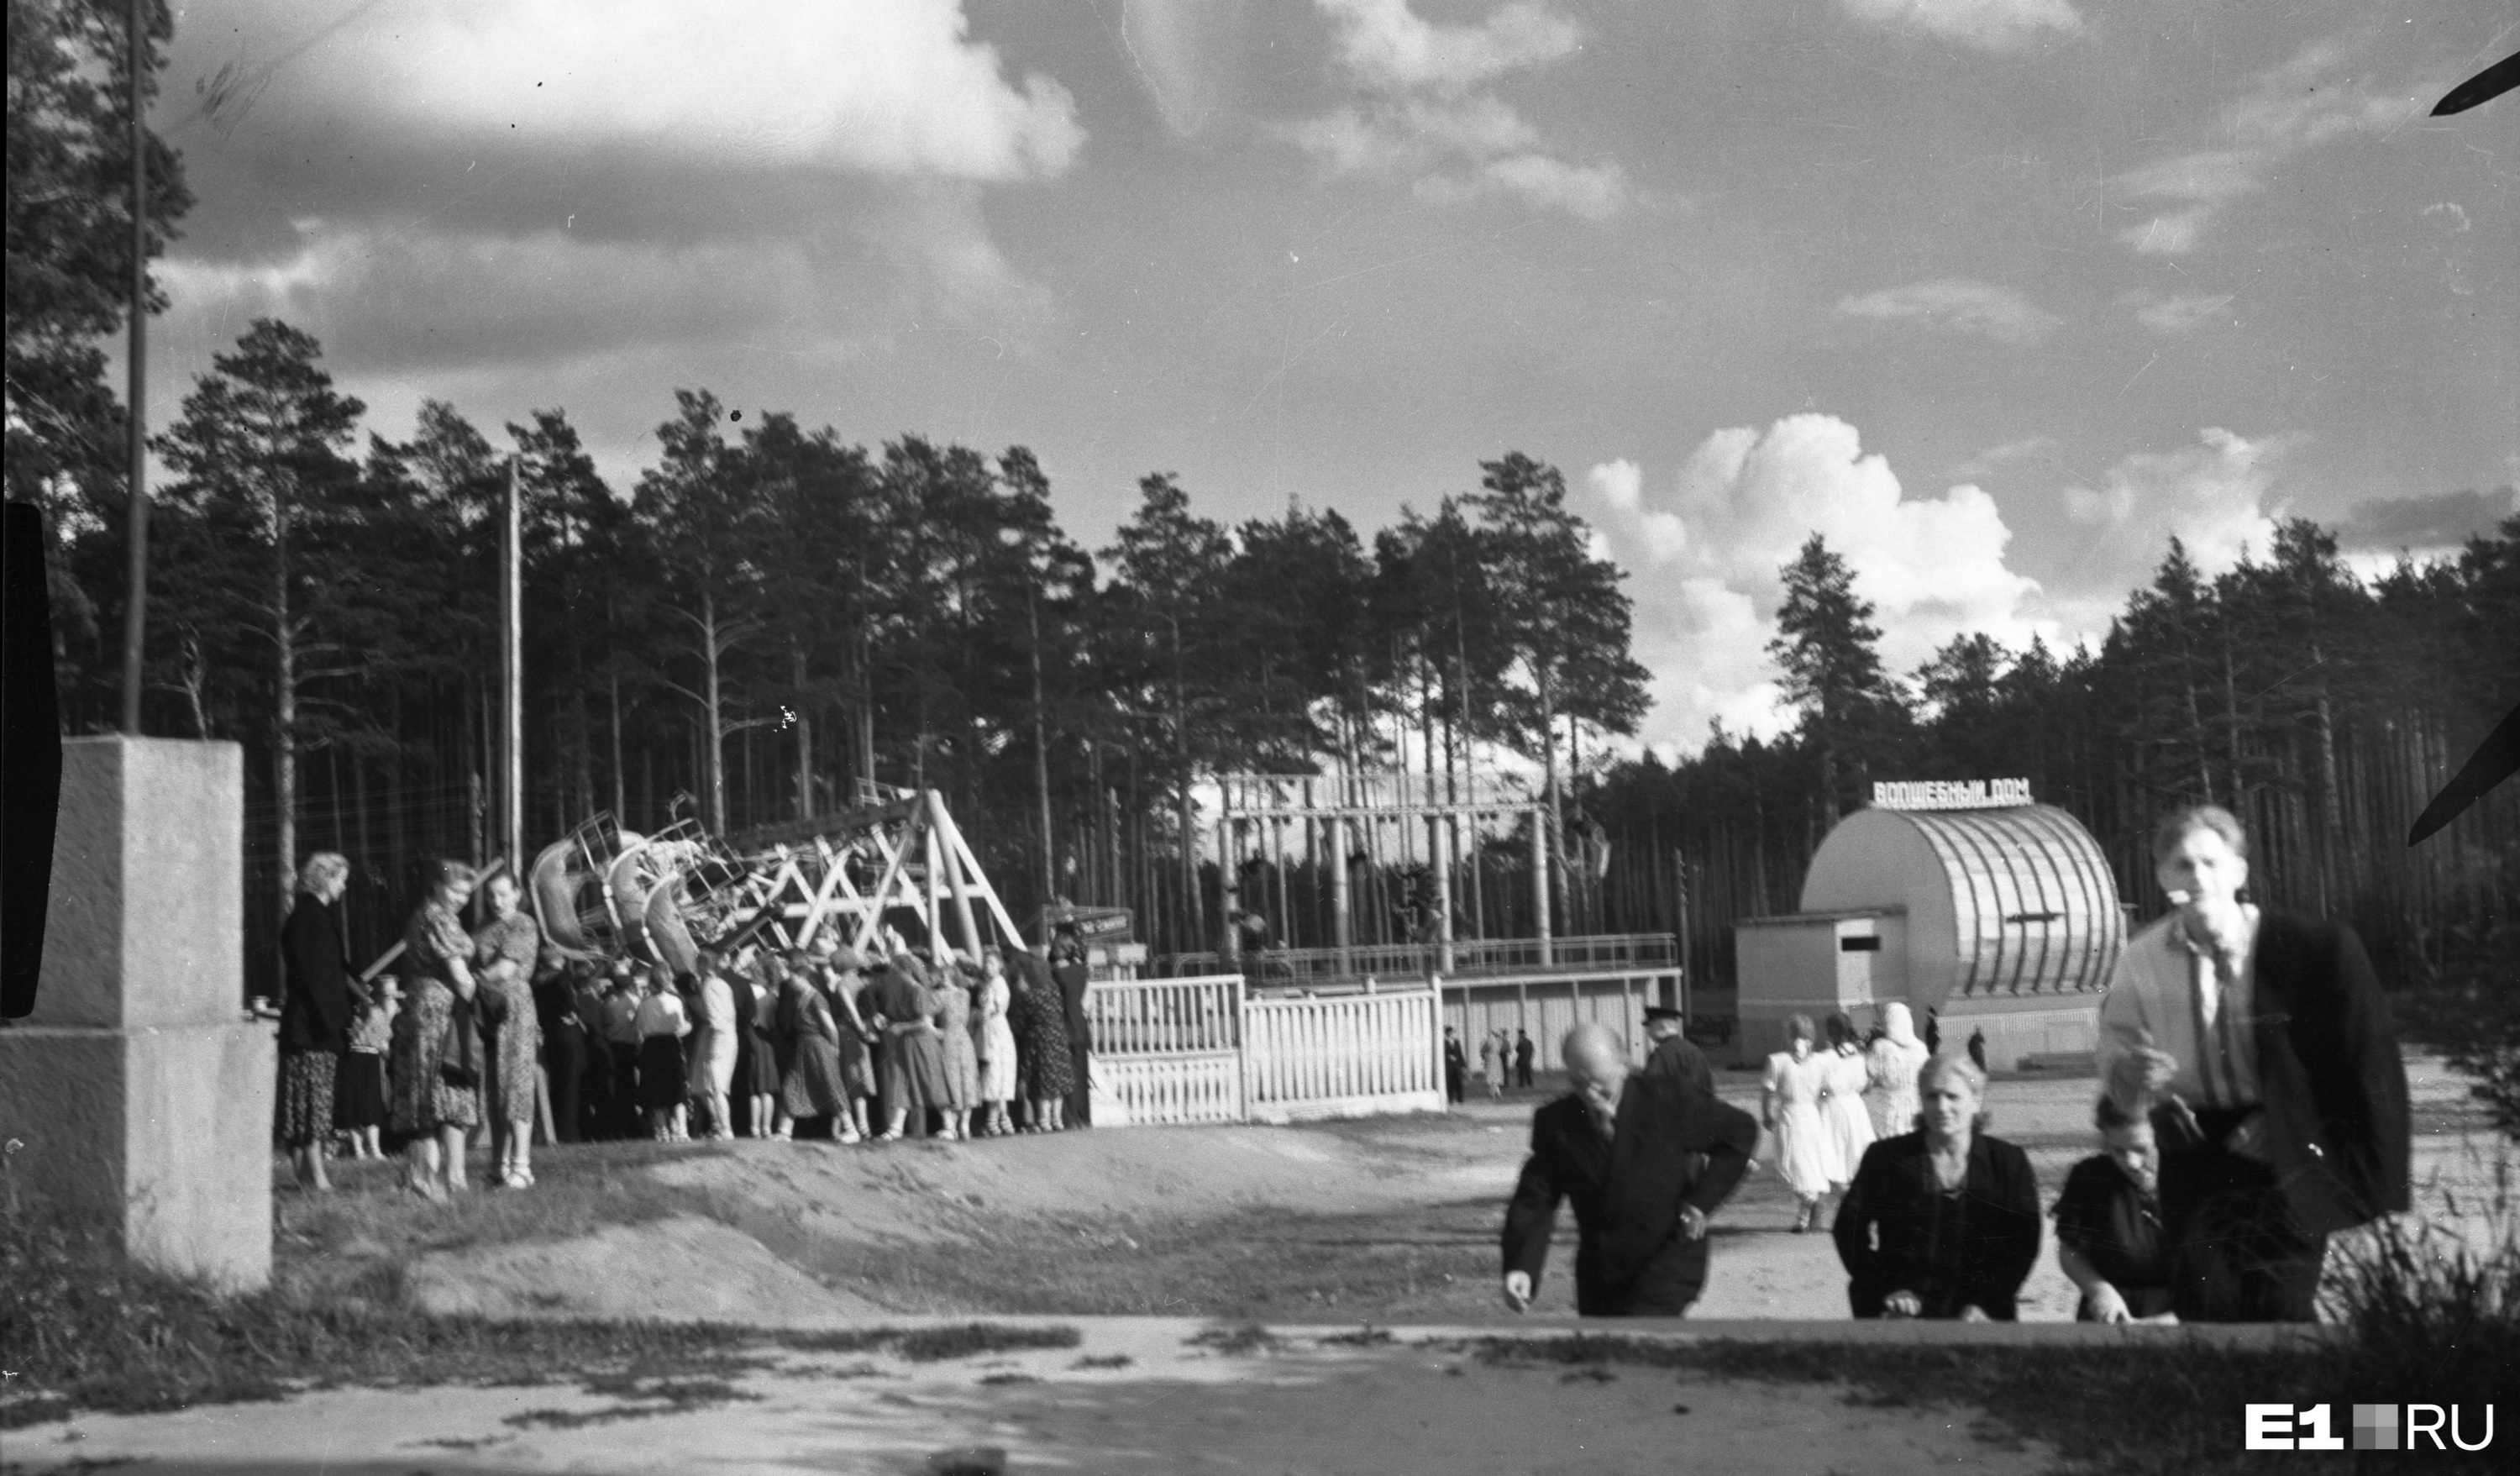 Площадь аттракционов в Центральном парке культуры и
отдыха. 1955 год